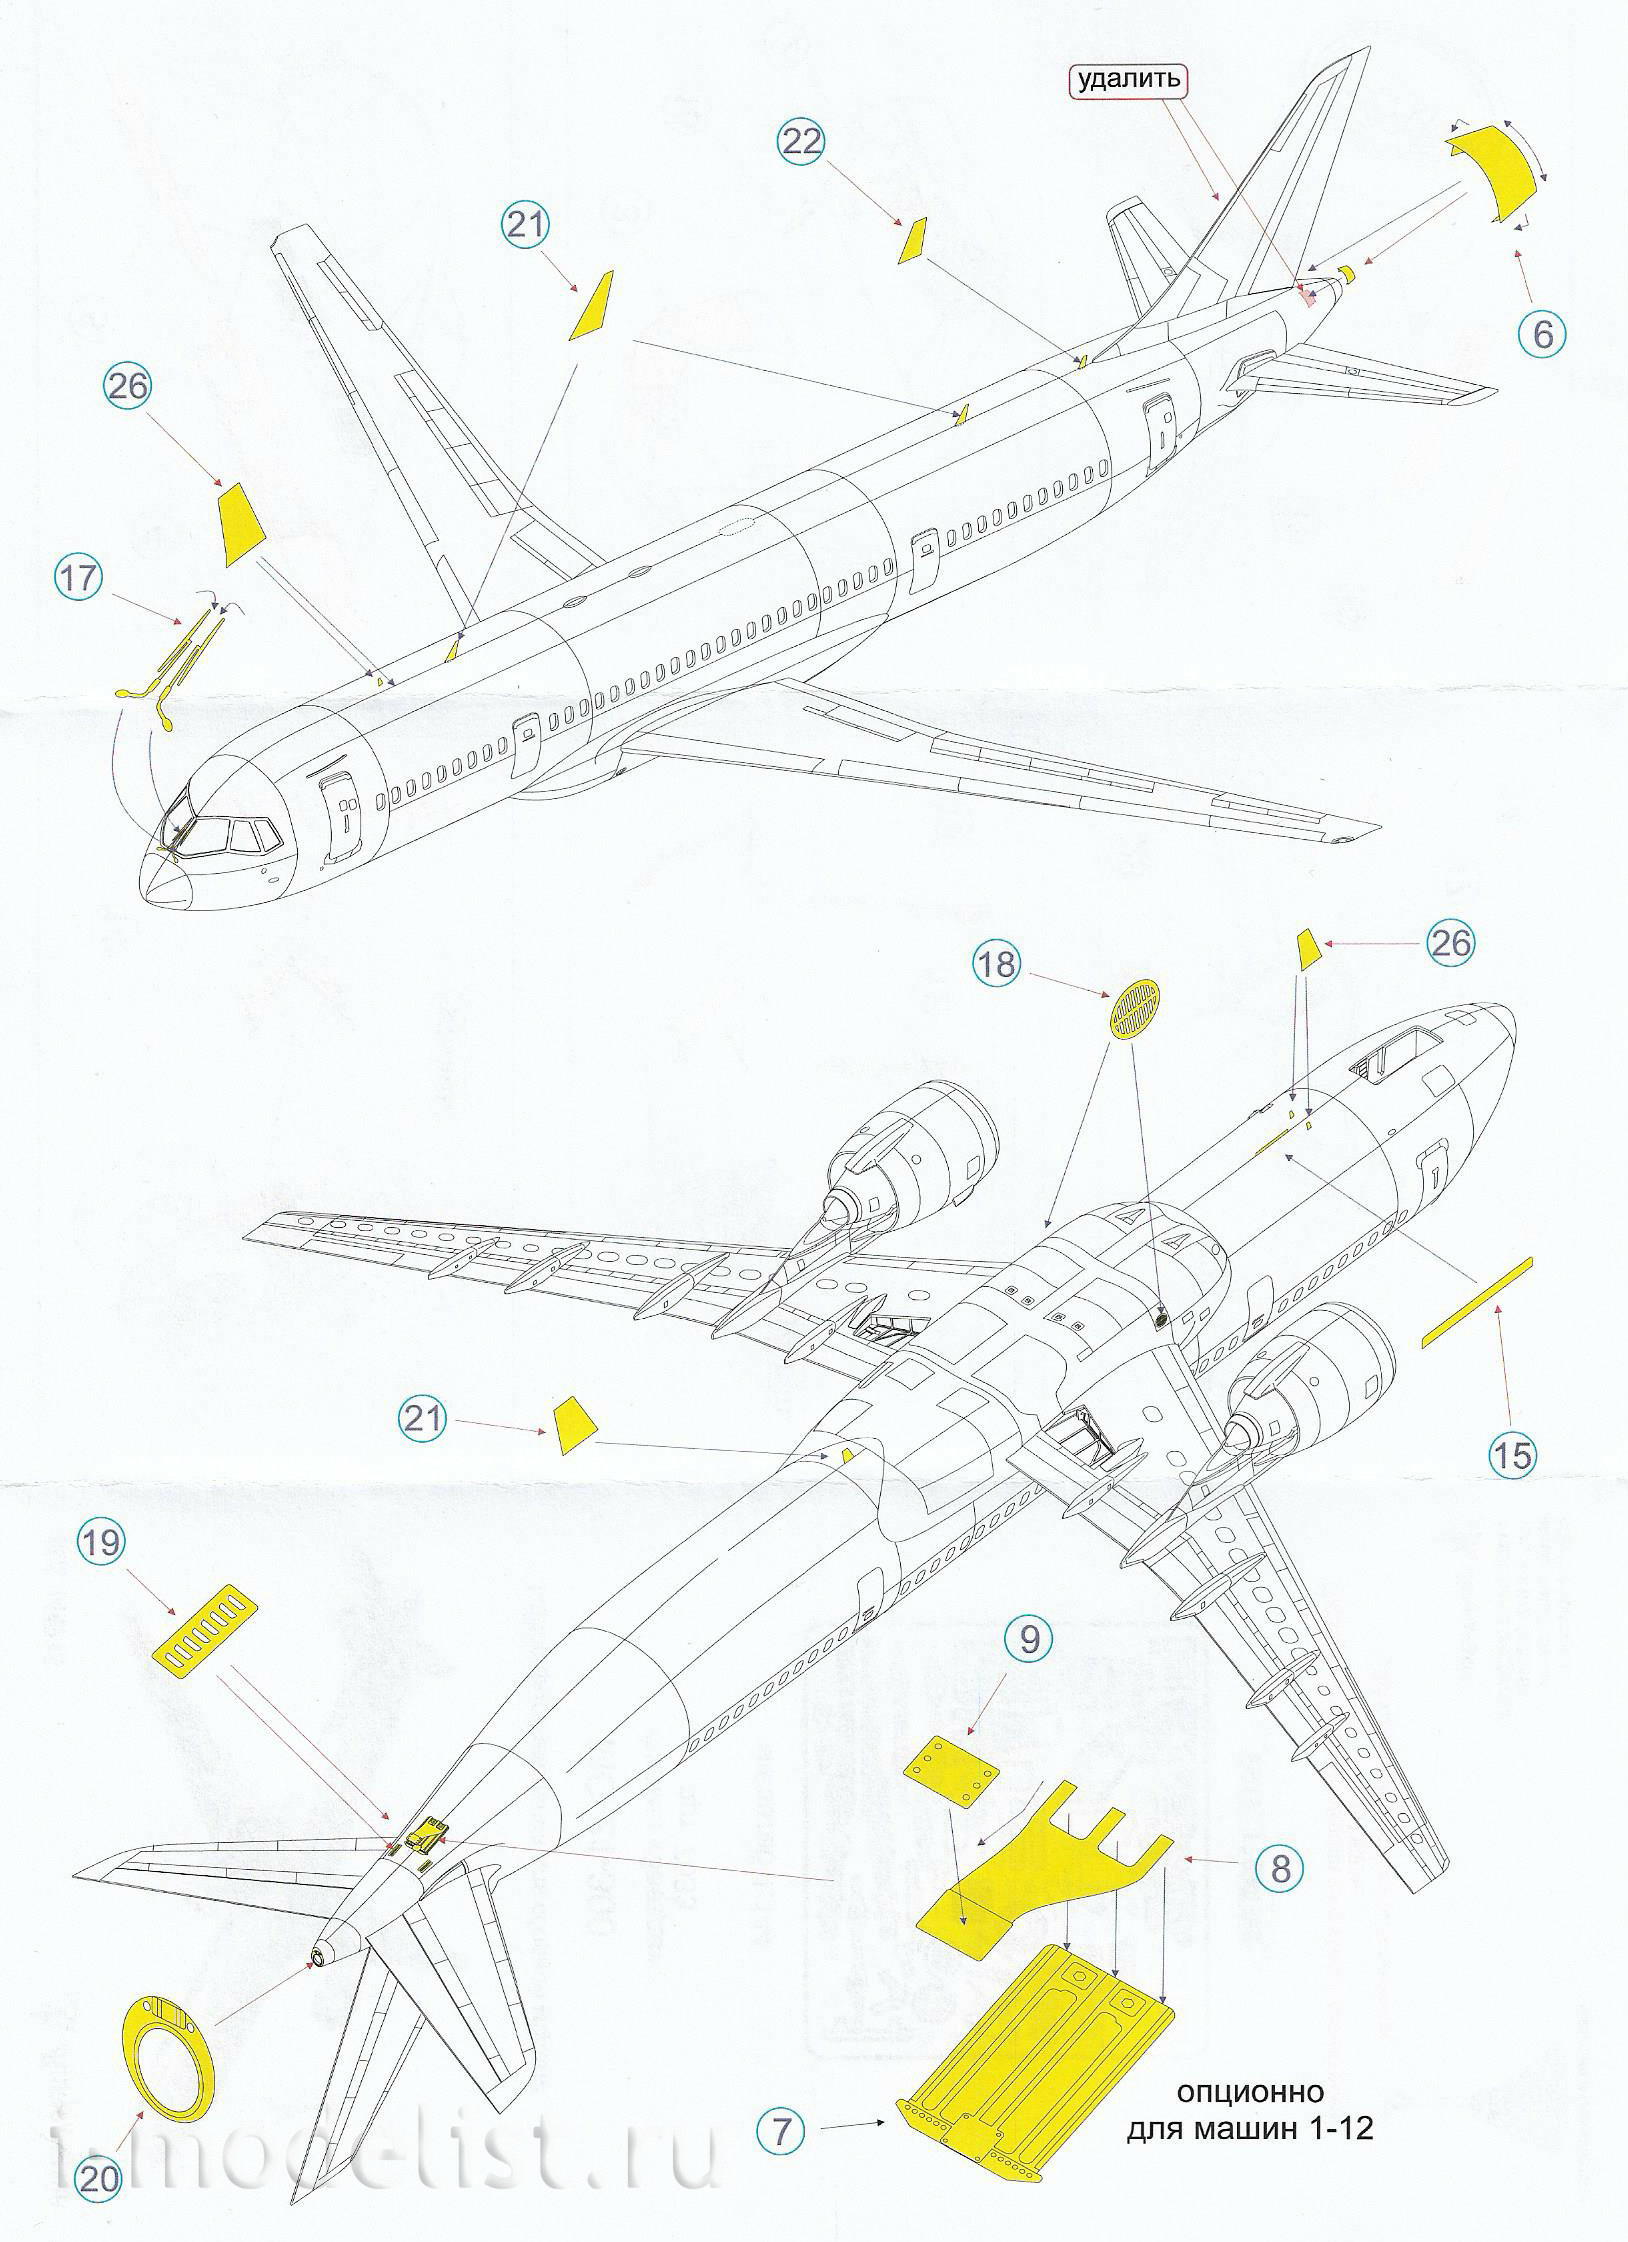 144213 Микродизайн 1/144 Набор фототравления для модели МС-21-300 от Звезды.